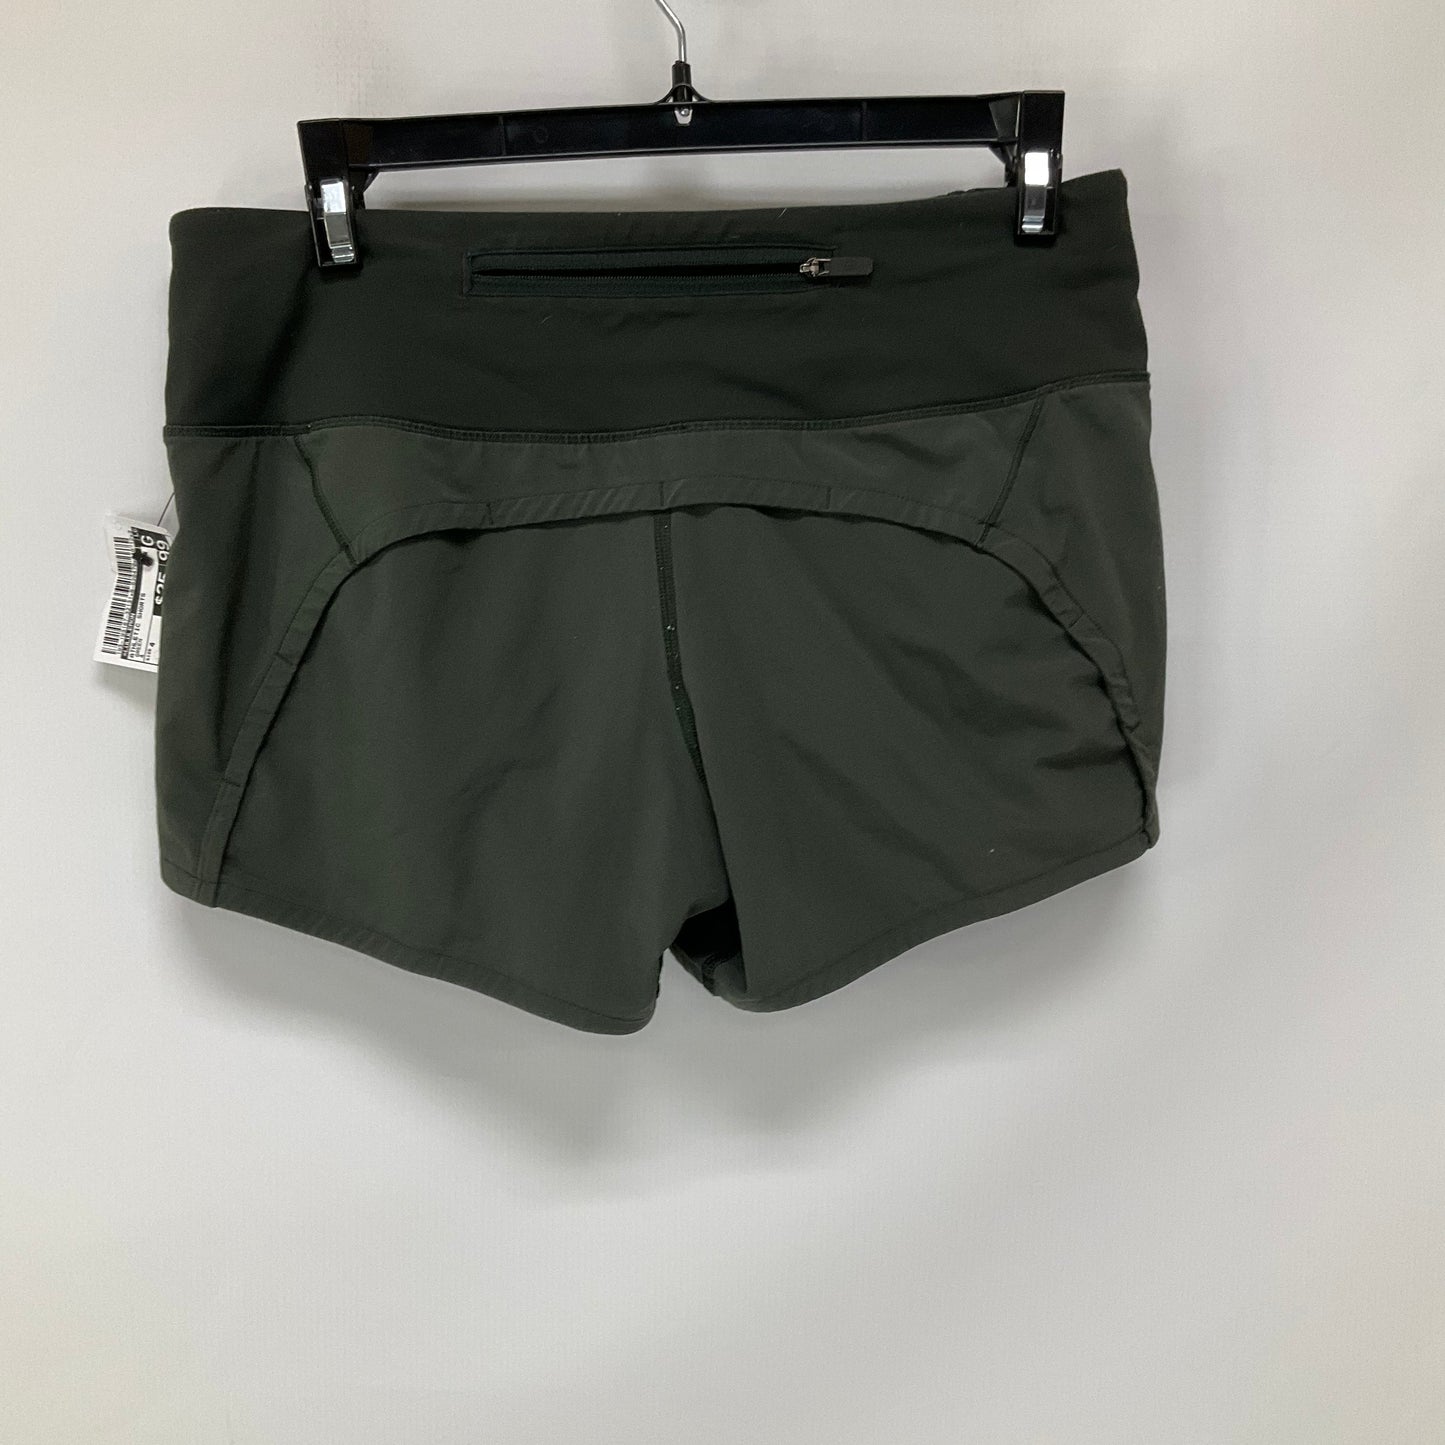 Green Athletic Shorts Lululemon, Size 4